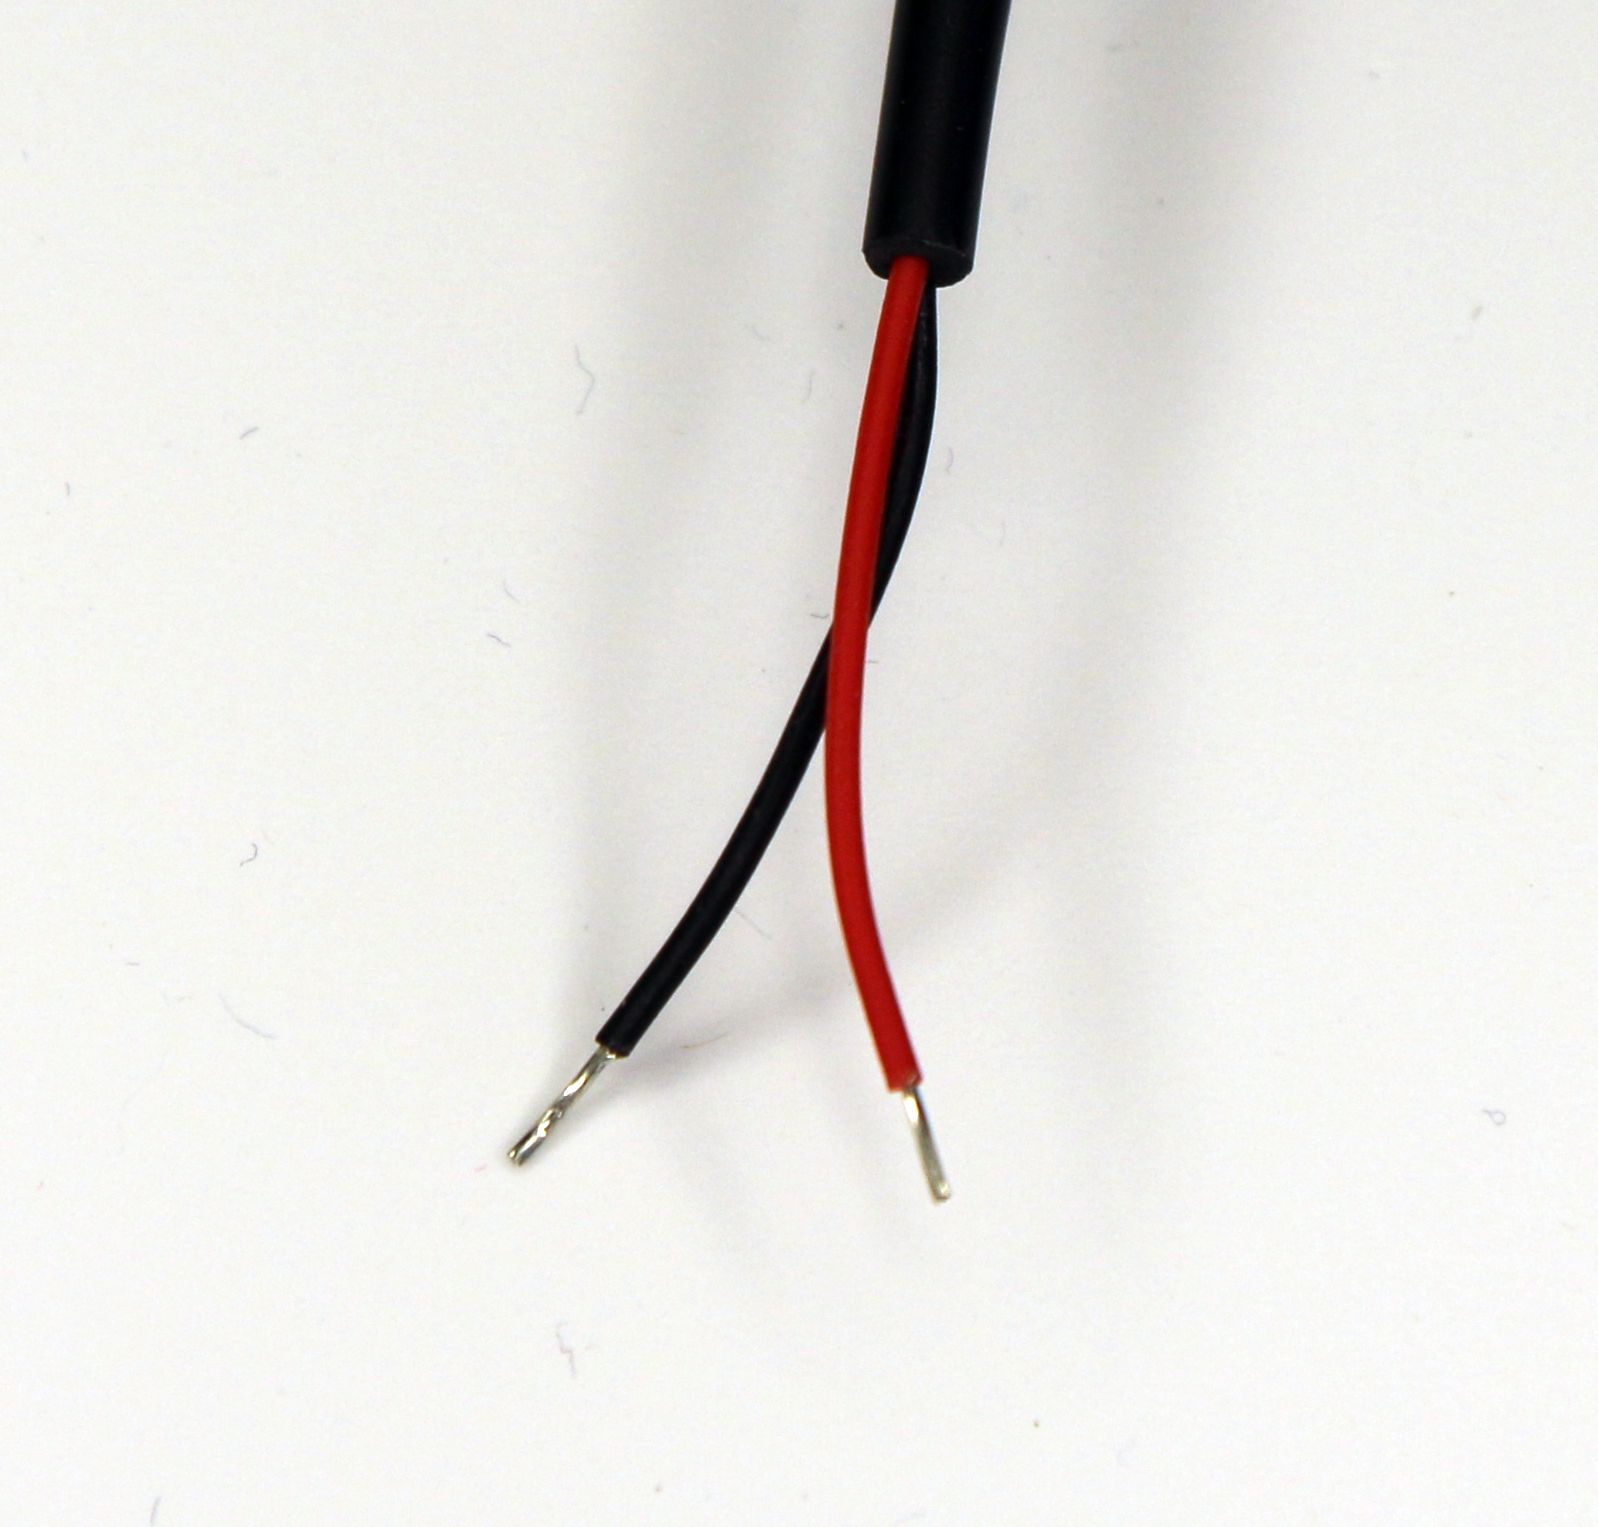 Цифровой датчик температуры в гильзе, жесткий кабель 2.5 метра 26